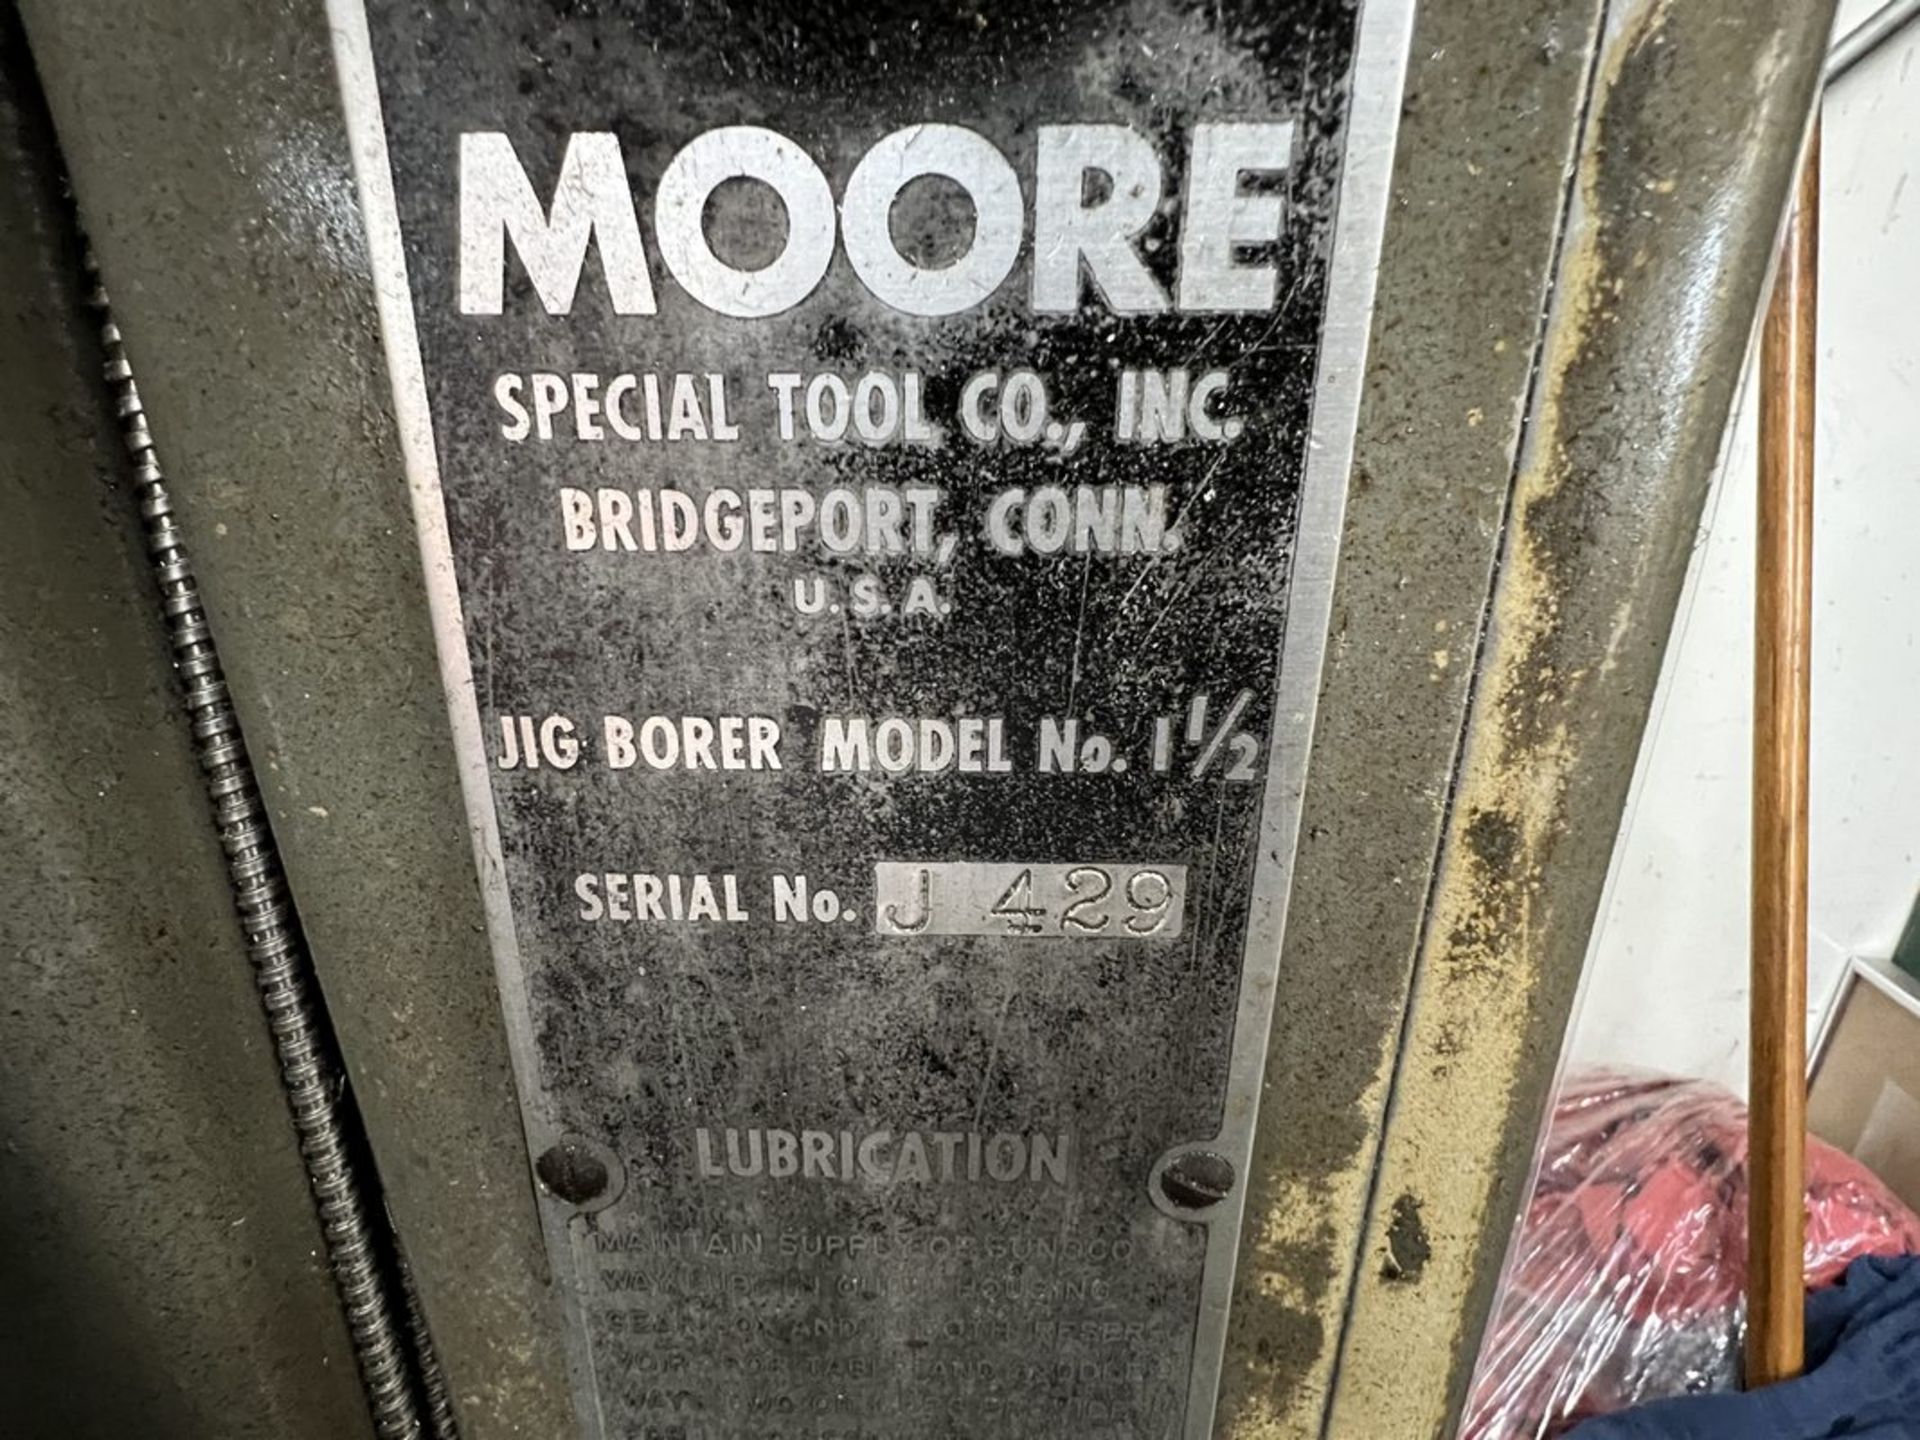 Moore 1-1/2 Jig Bore Machine, S/N J-429 - Image 6 of 11